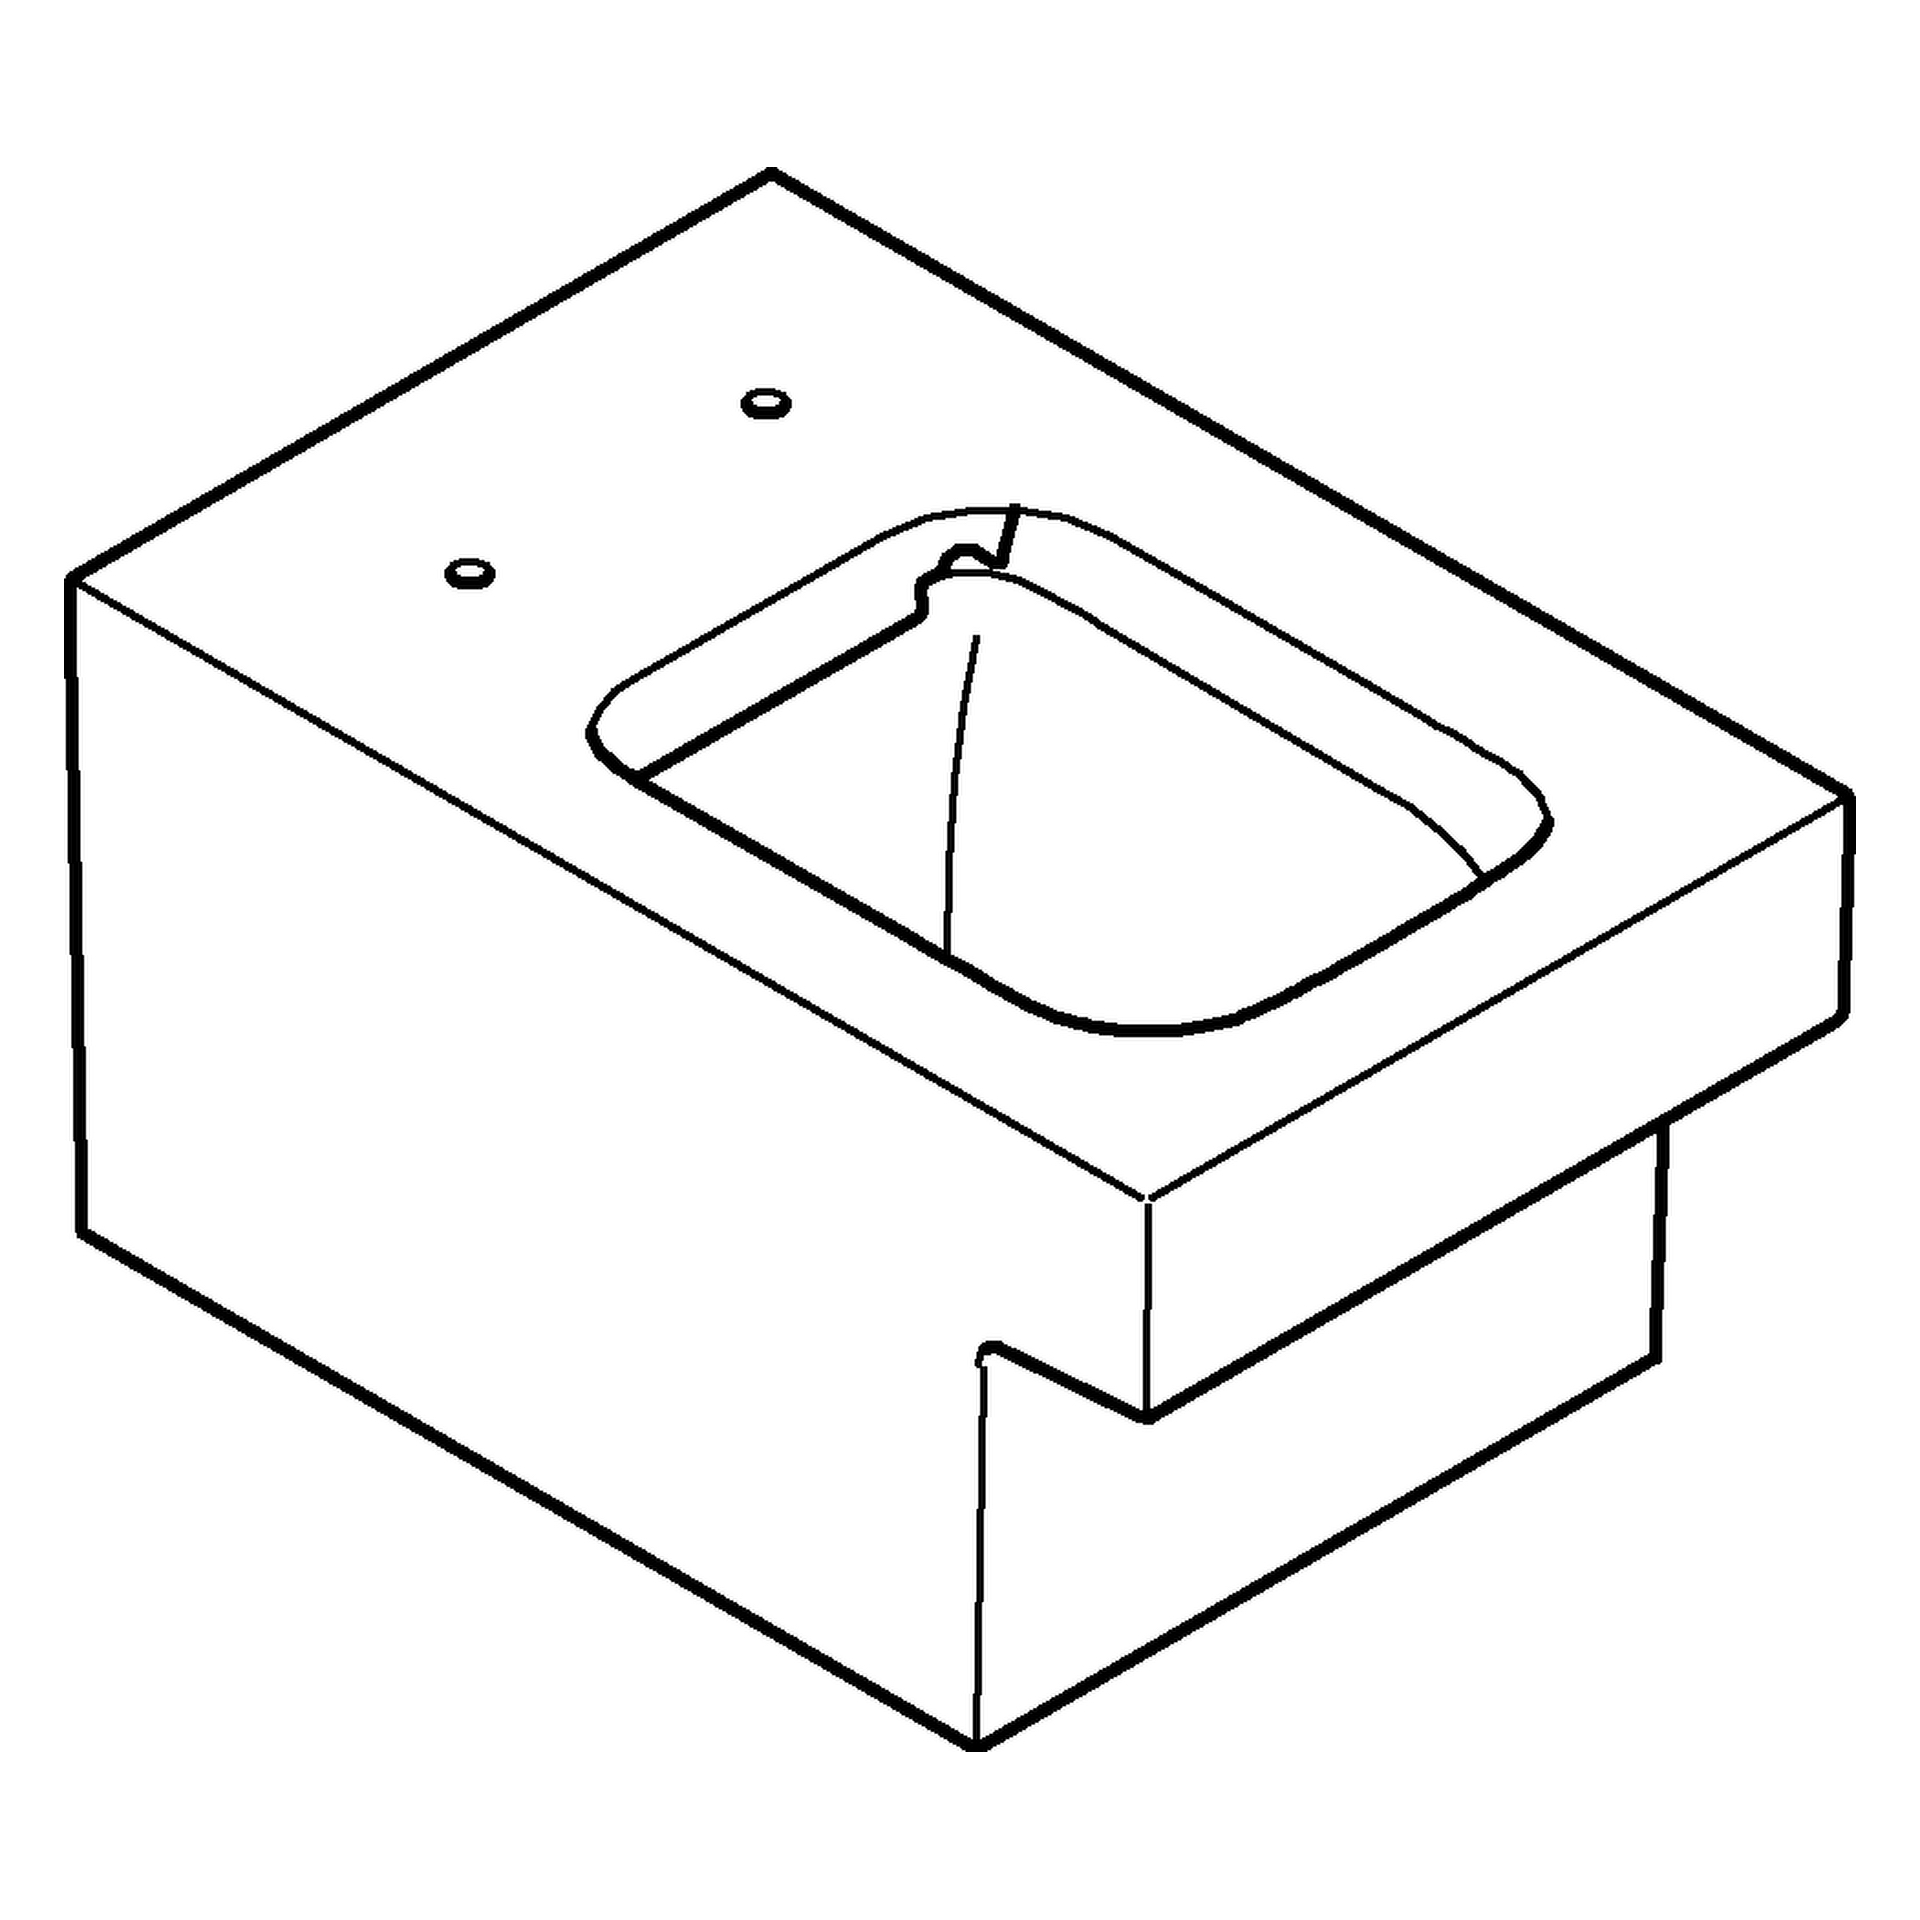 Wand-Tiefspül-WC Cube Keramik 39245_H, Abgang waagerecht, spülrandlos,, für Unterputz-Spülkasten, PureGuard Hygieneoberfläche, aus Sanitärkeramik, alpinweiß